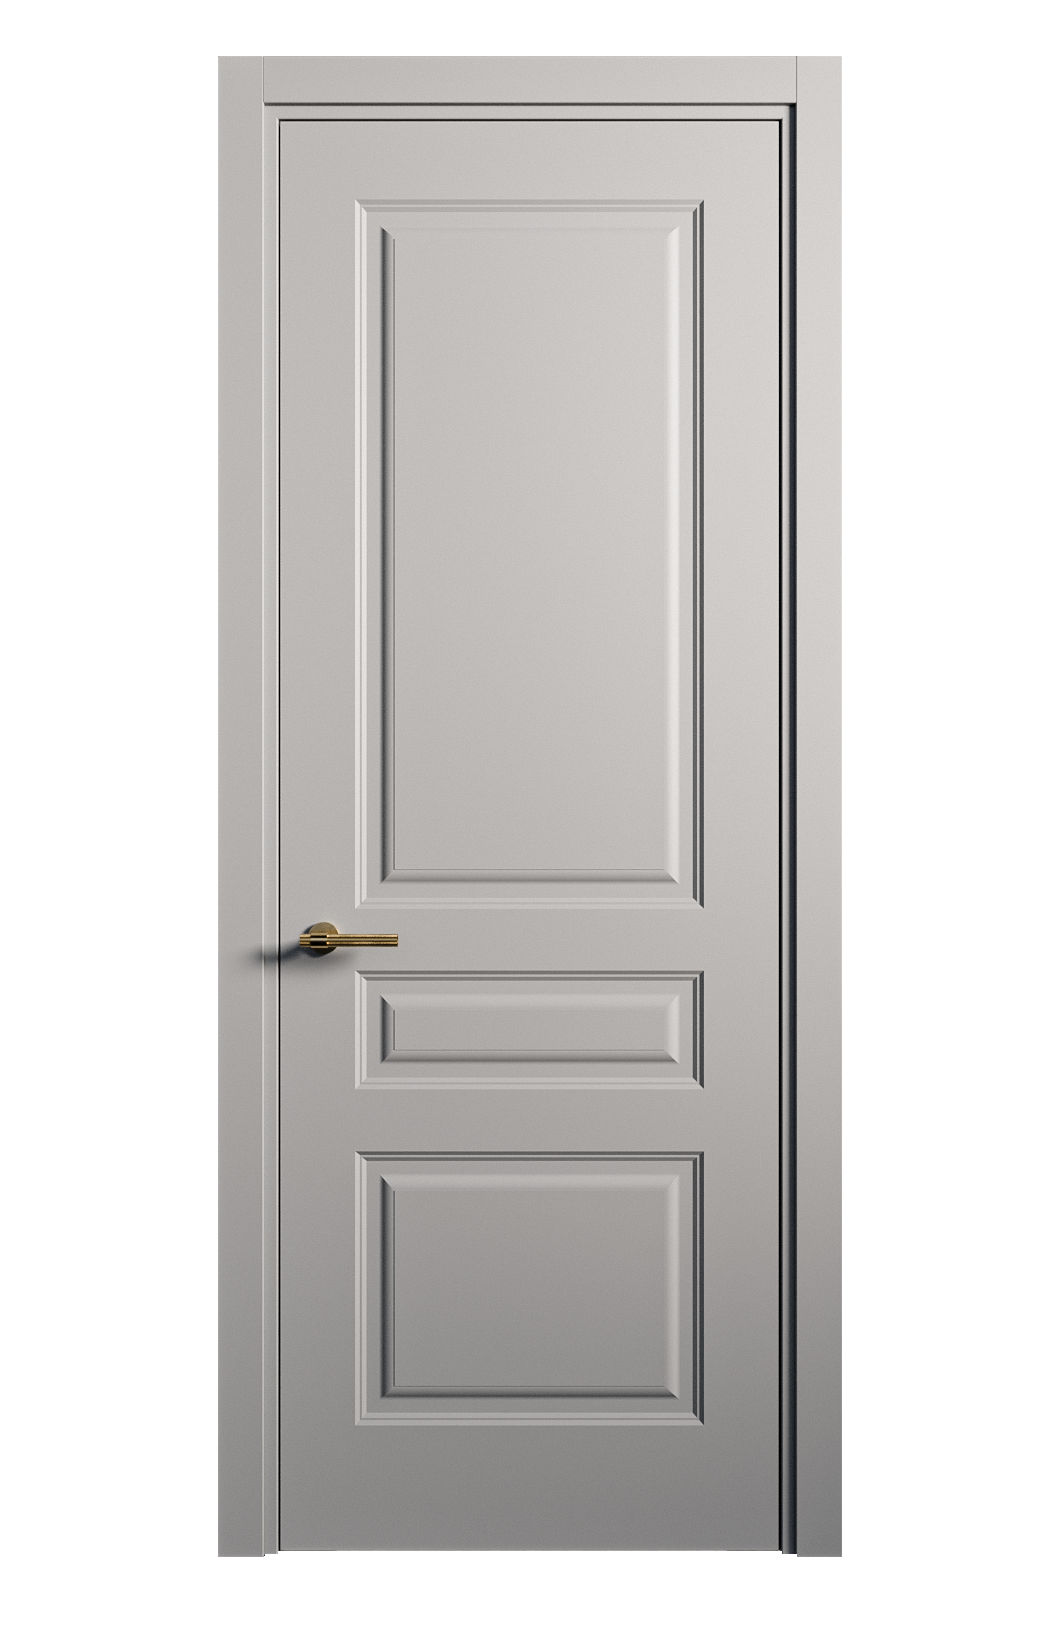 Межкомнатная дверь Вита-2 глухая эмаль ral 7040 26376